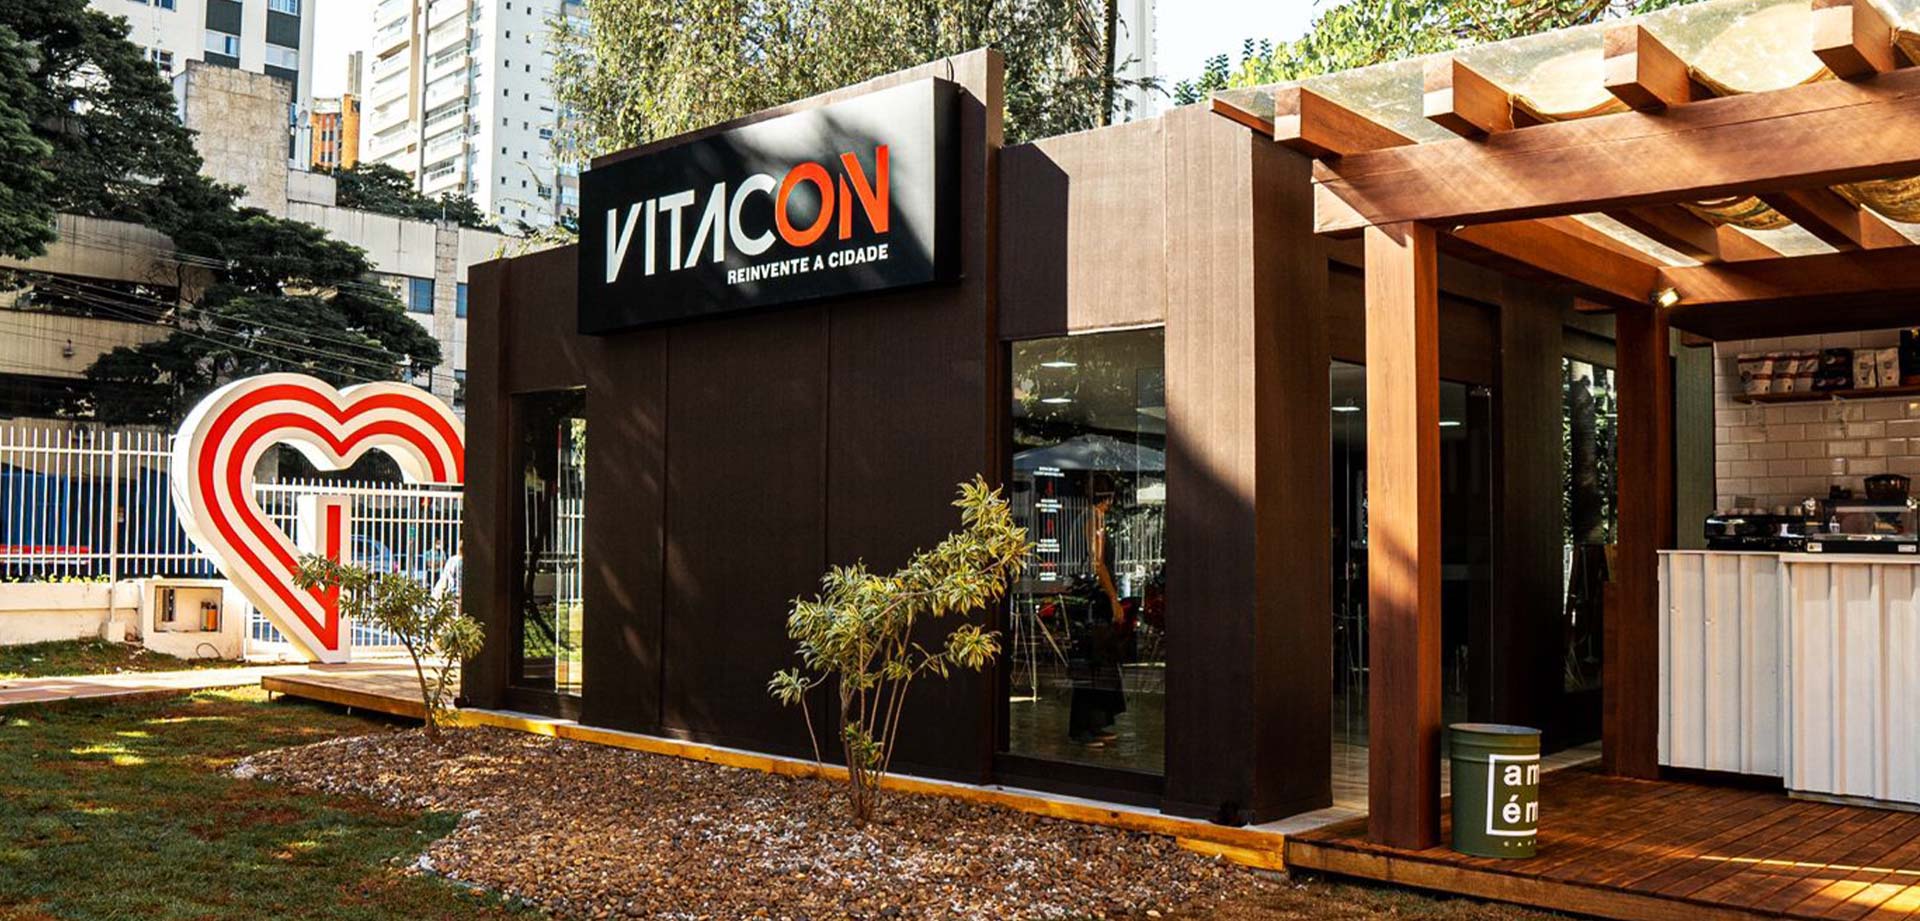 Vitacon lançou três projetos no primeiro semestre e quer aproveitar alta na demanda para acelerar o ritmo até o final do ano.